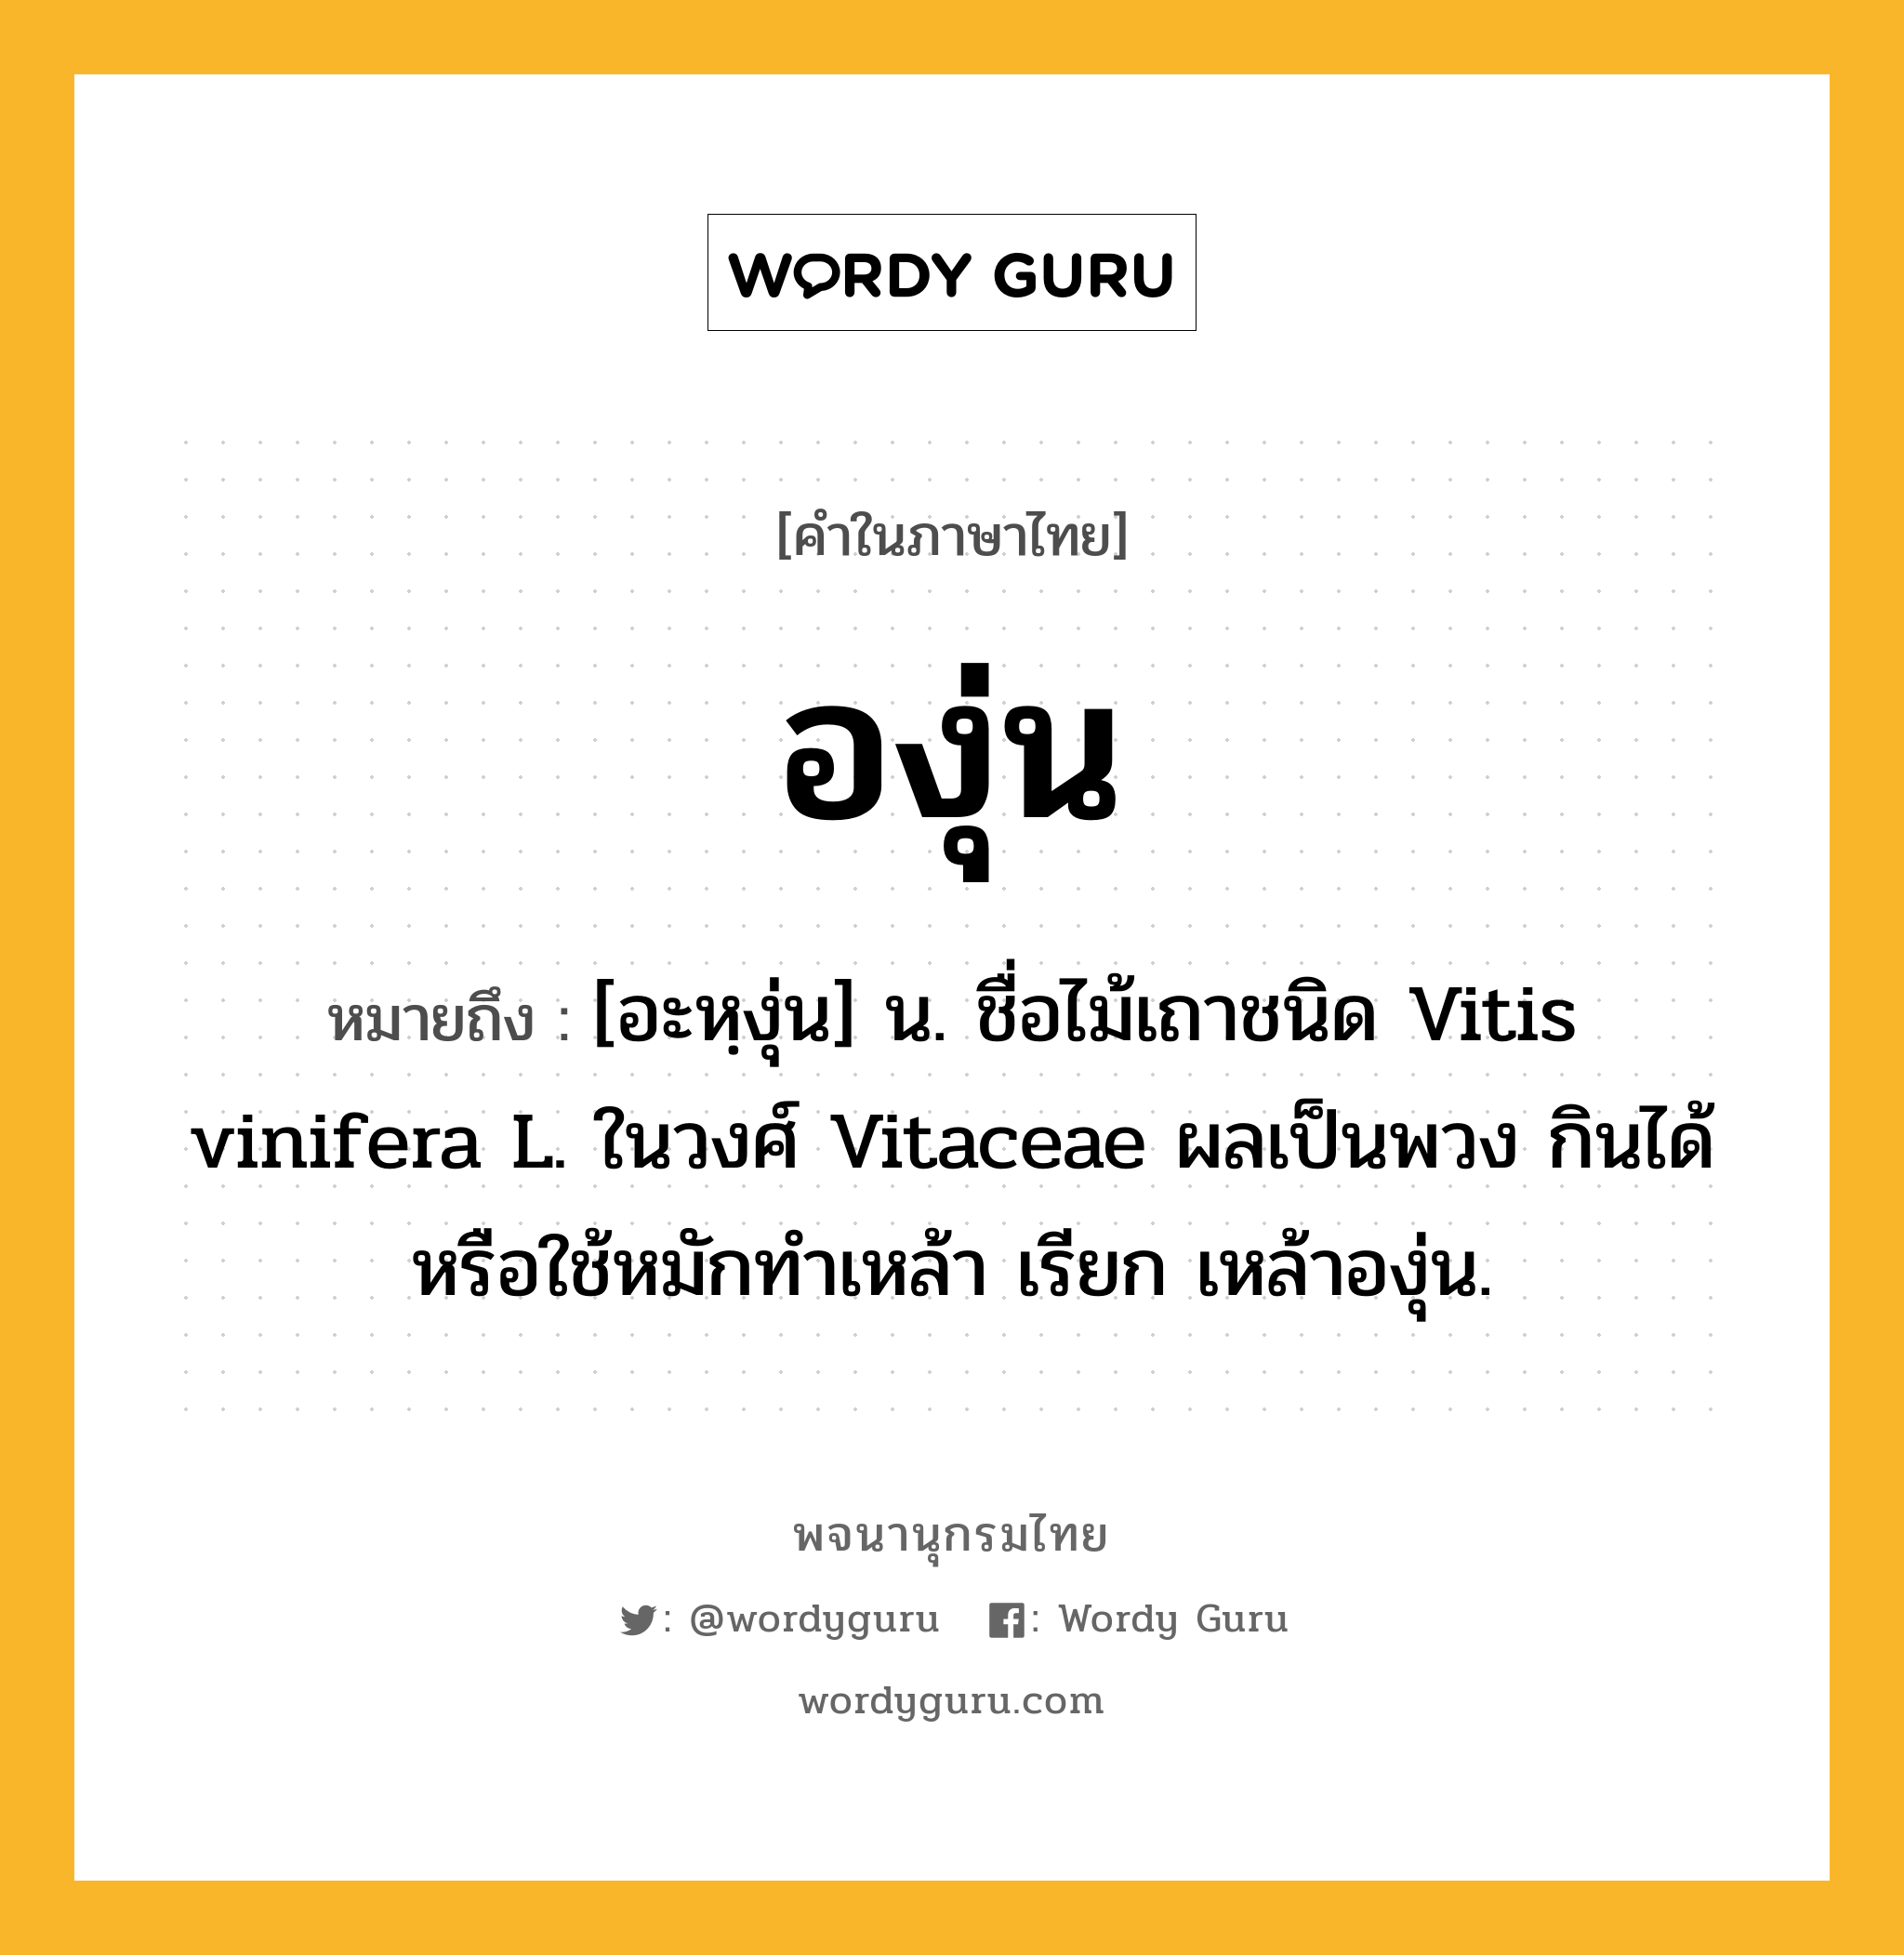 องุ่น ความหมาย หมายถึงอะไร?, คำในภาษาไทย องุ่น หมายถึง [อะหฺงุ่น] น. ชื่อไม้เถาชนิด Vitis vinifera L. ในวงศ์ Vitaceae ผลเป็นพวง กินได้หรือใช้หมักทําเหล้า เรียก เหล้าองุ่น.